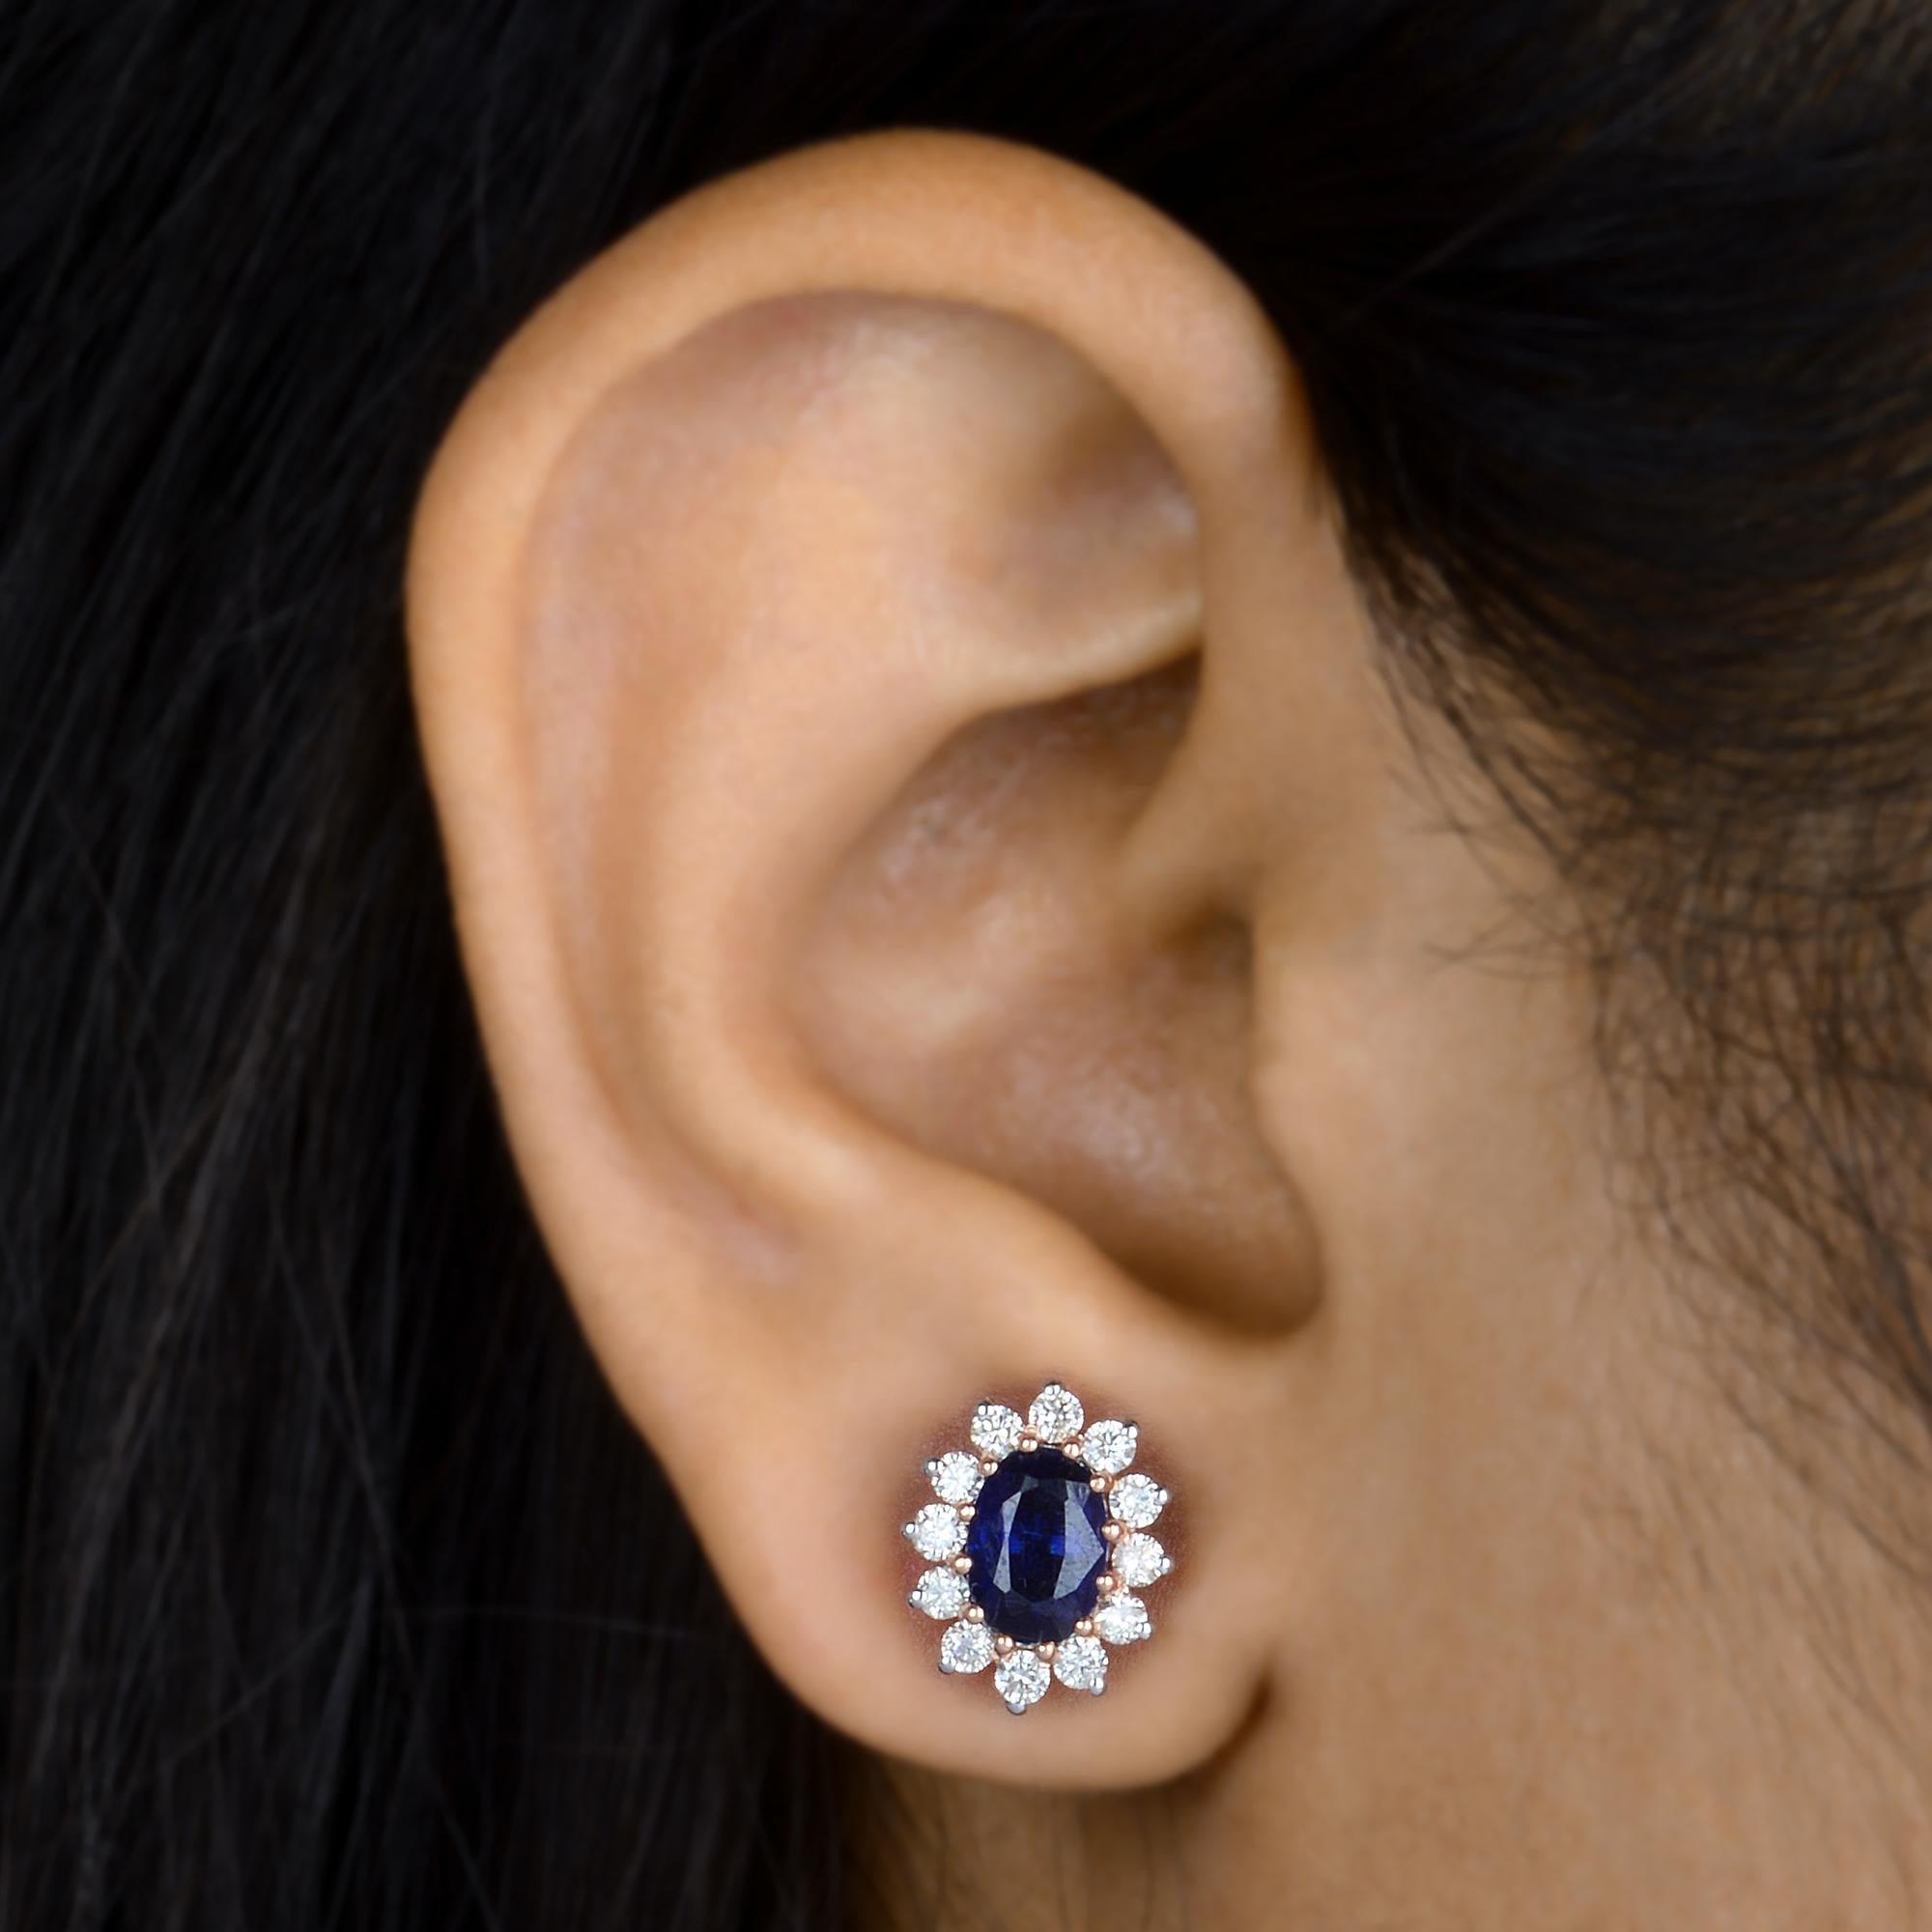 Oval Cut Oval Kyanite Gemstone Stud Earrings Diamond Solid 10k Rose Gold Fine Jewelry For Sale